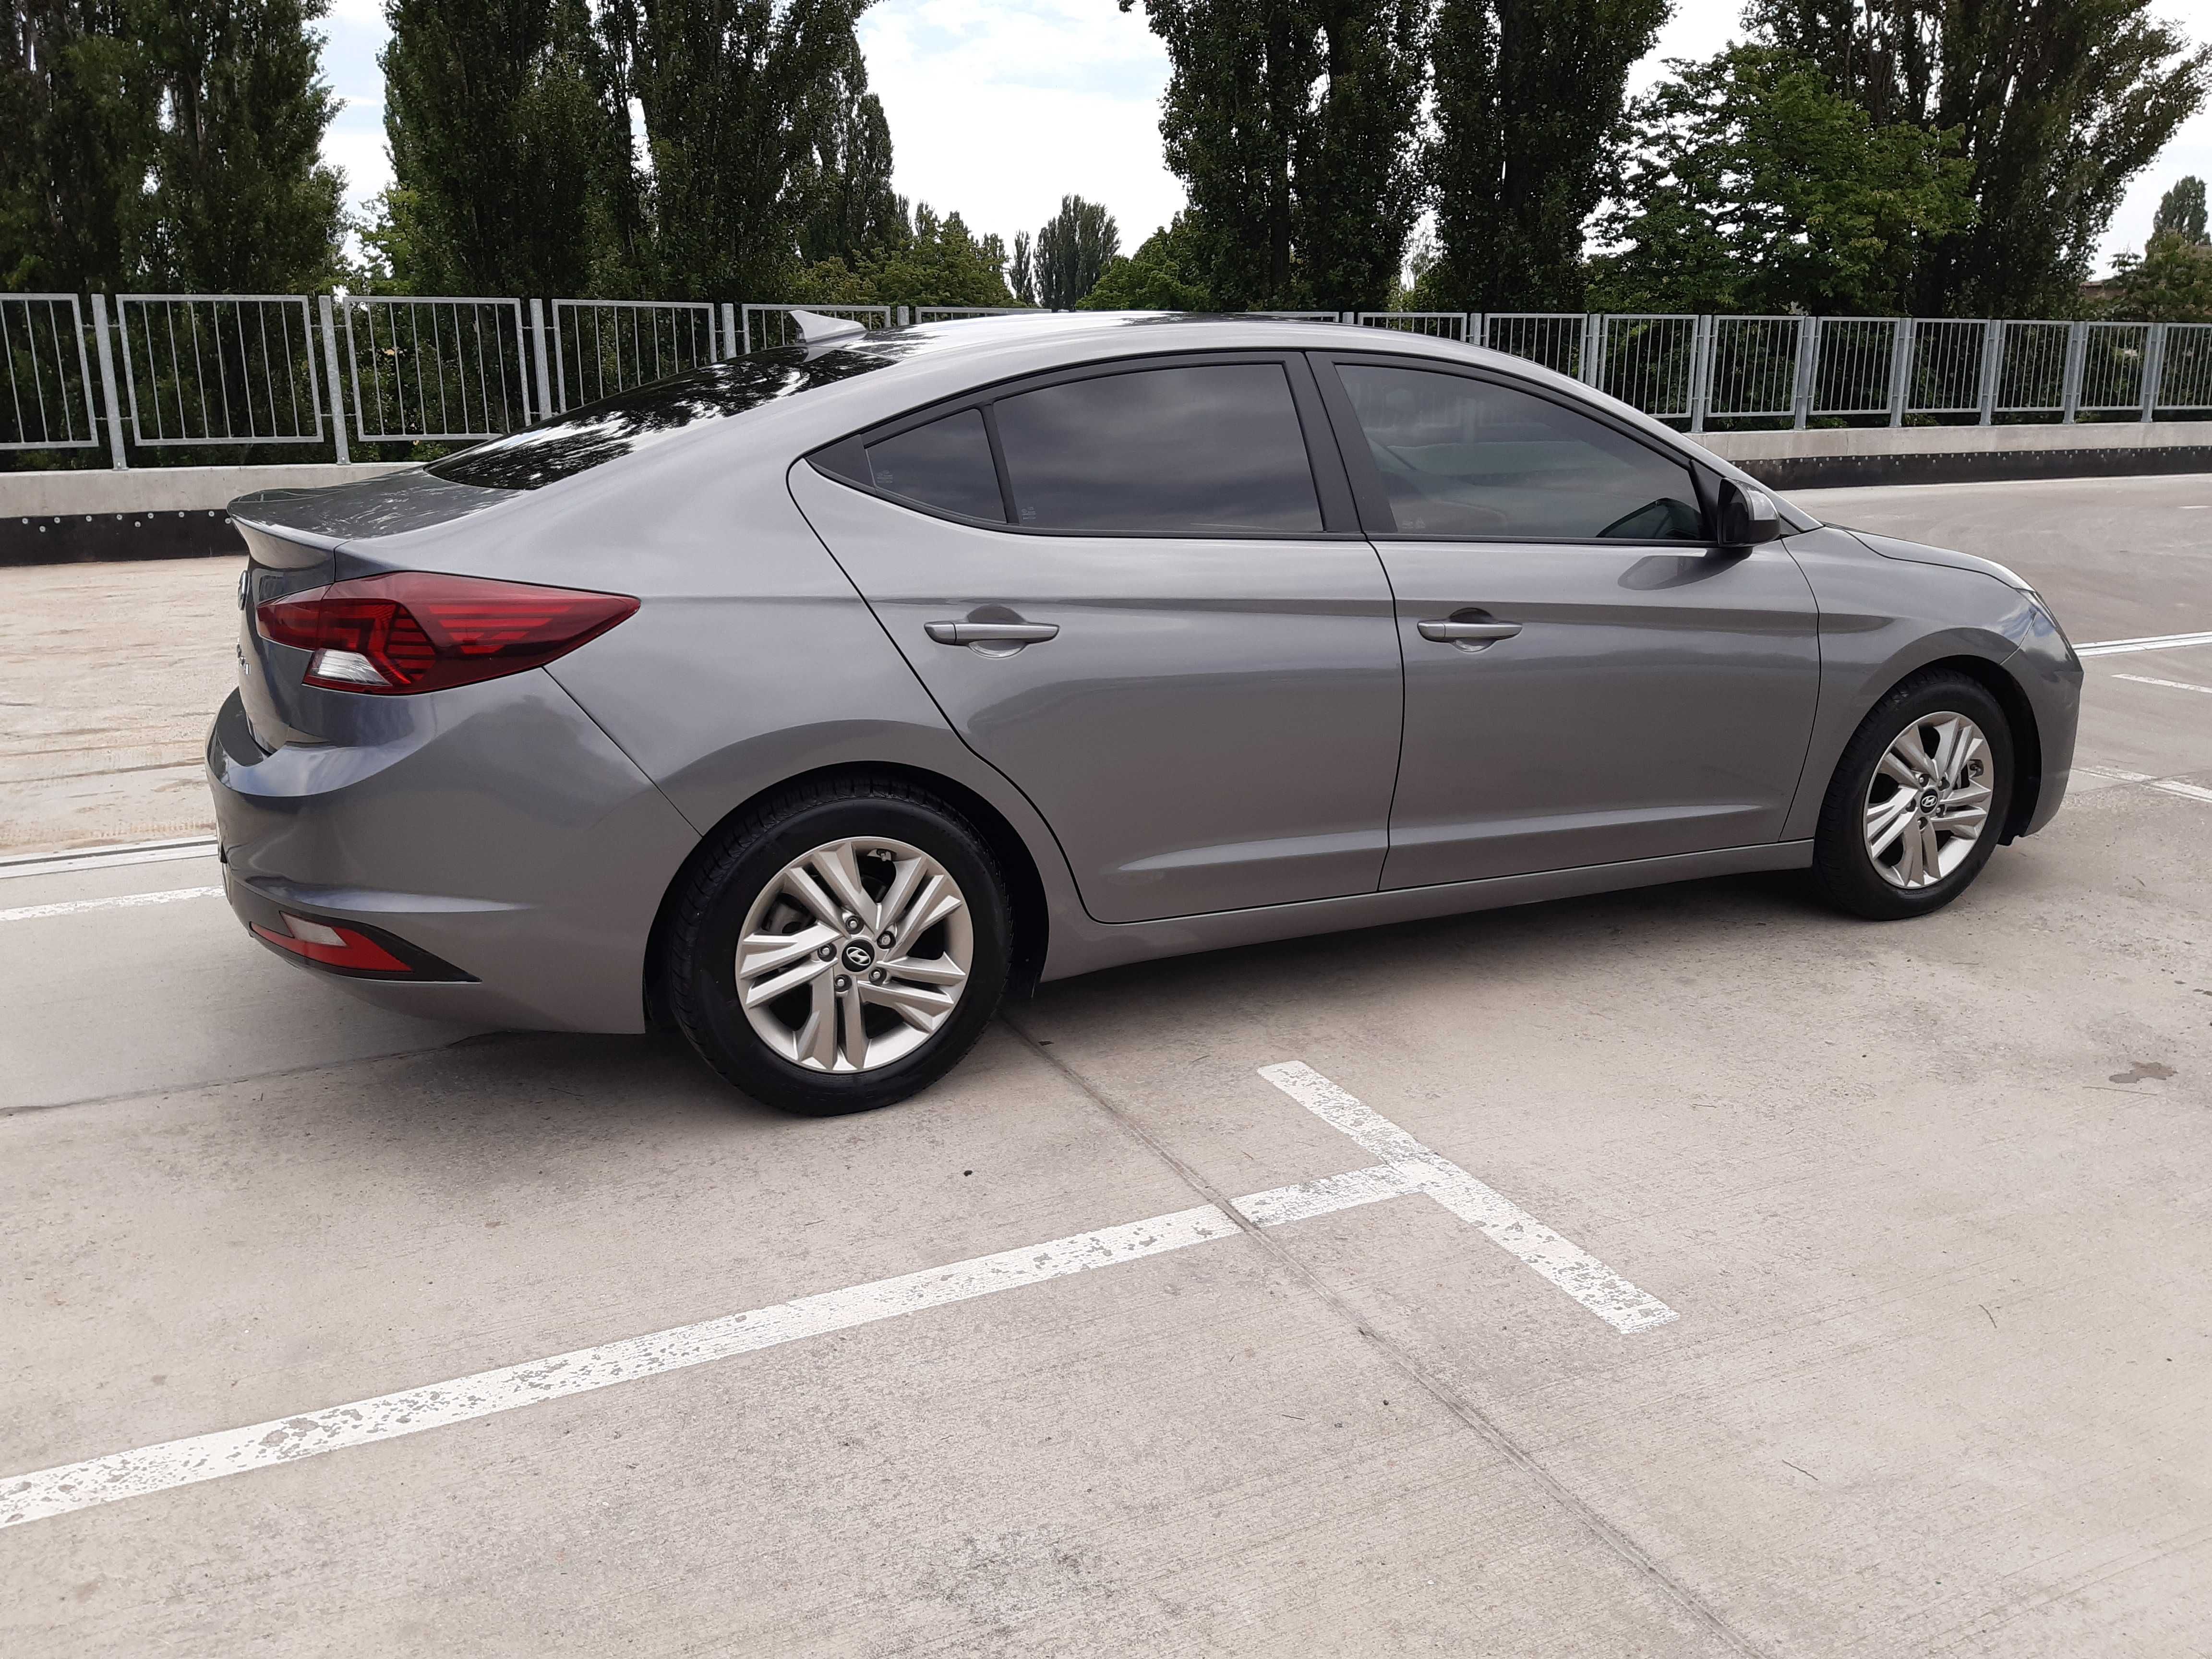 Аренда прокат авто Hyundai Elantra 2,0 АКП/ГАЗ ЕВРО4  от 30 $